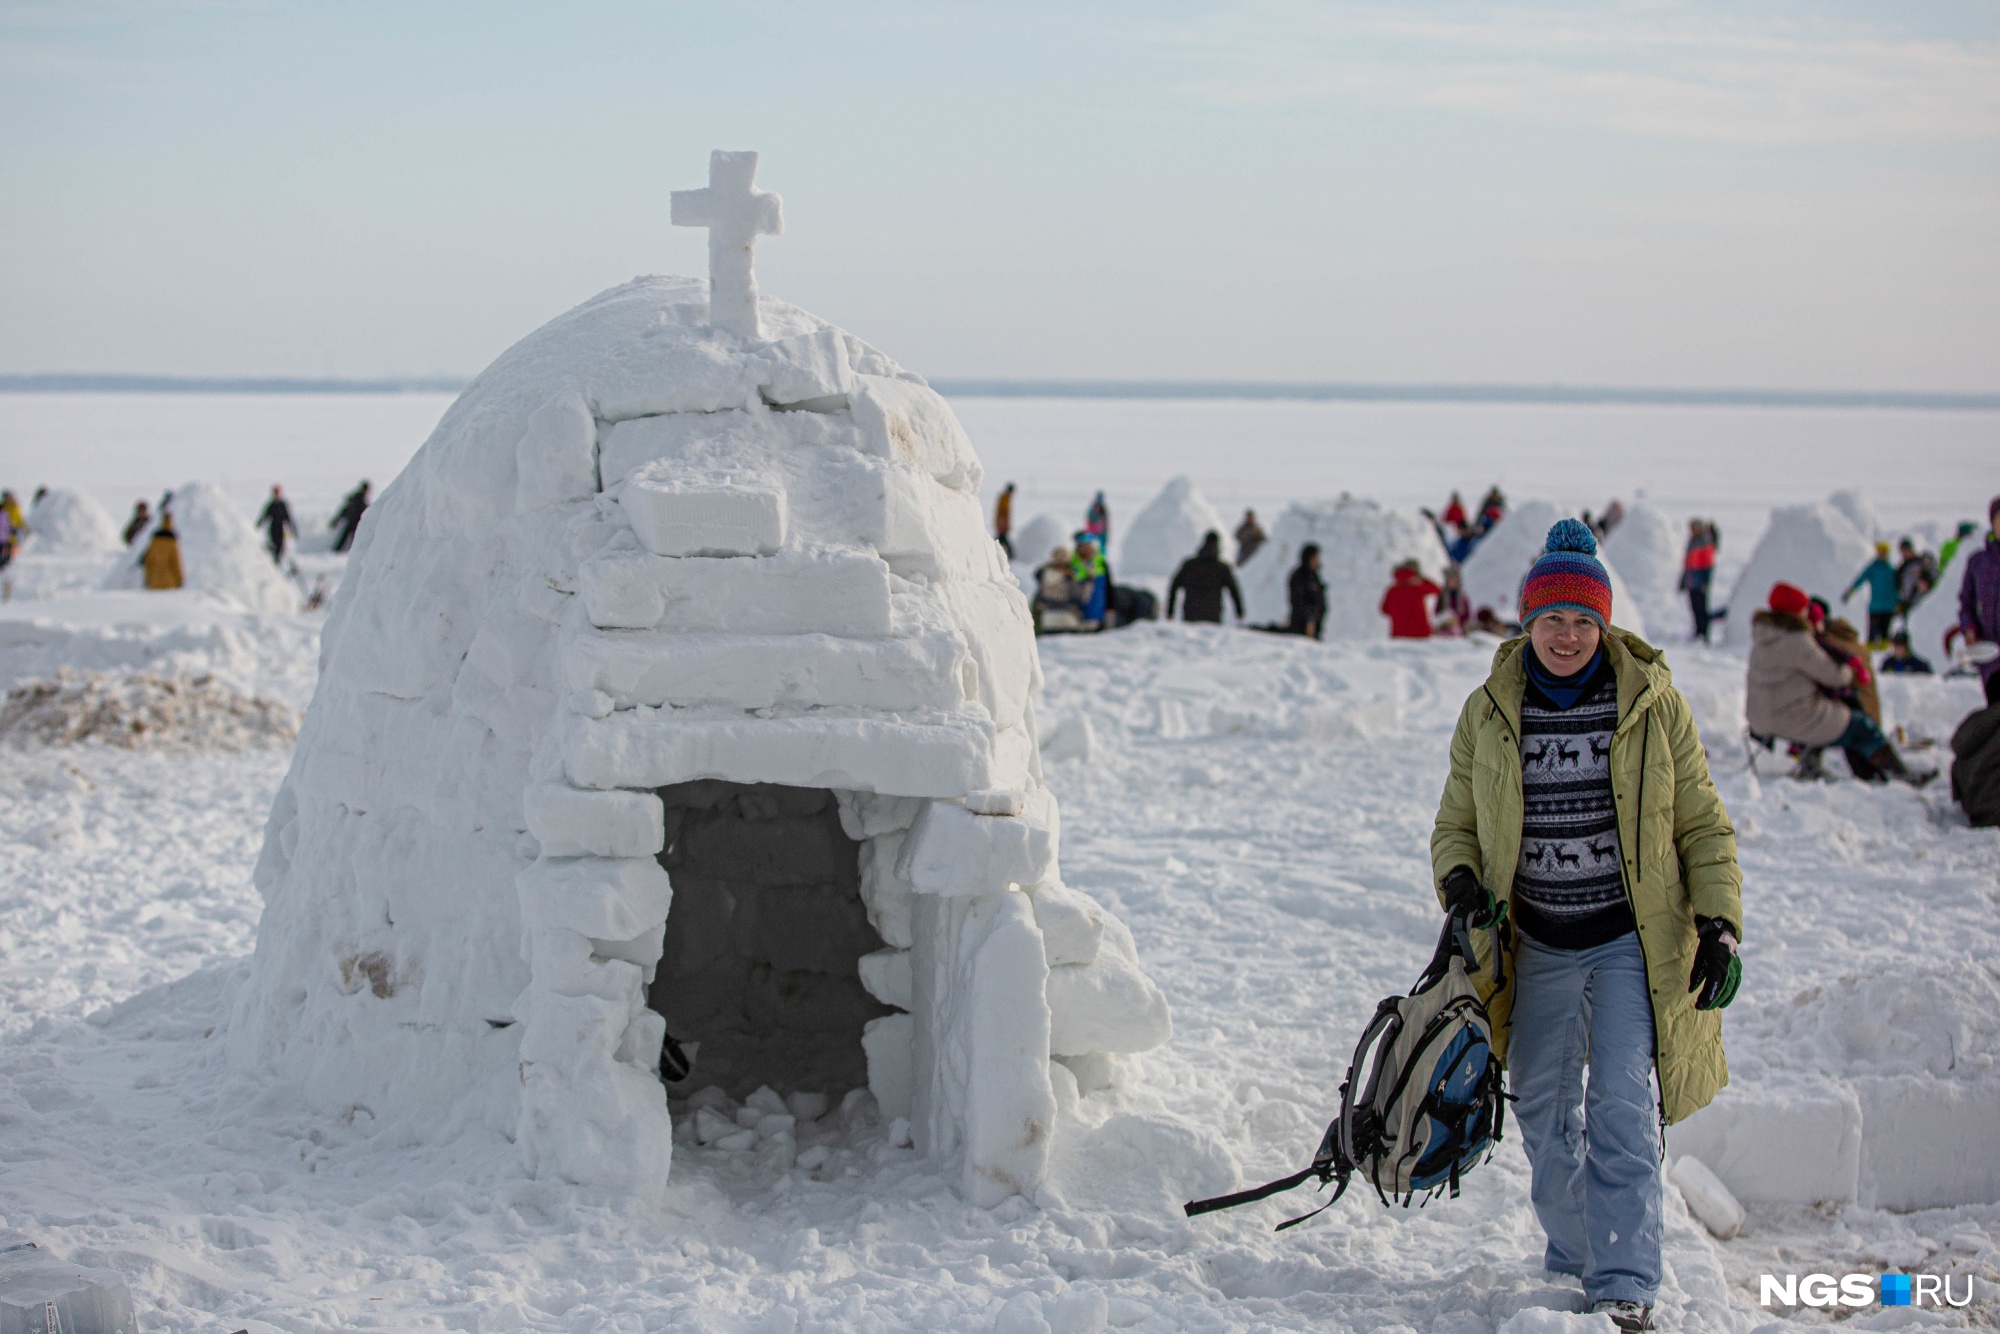 Вне конкурса на берегу построили снежную часовню — и это одна из самых внезапных построек этого фестиваля